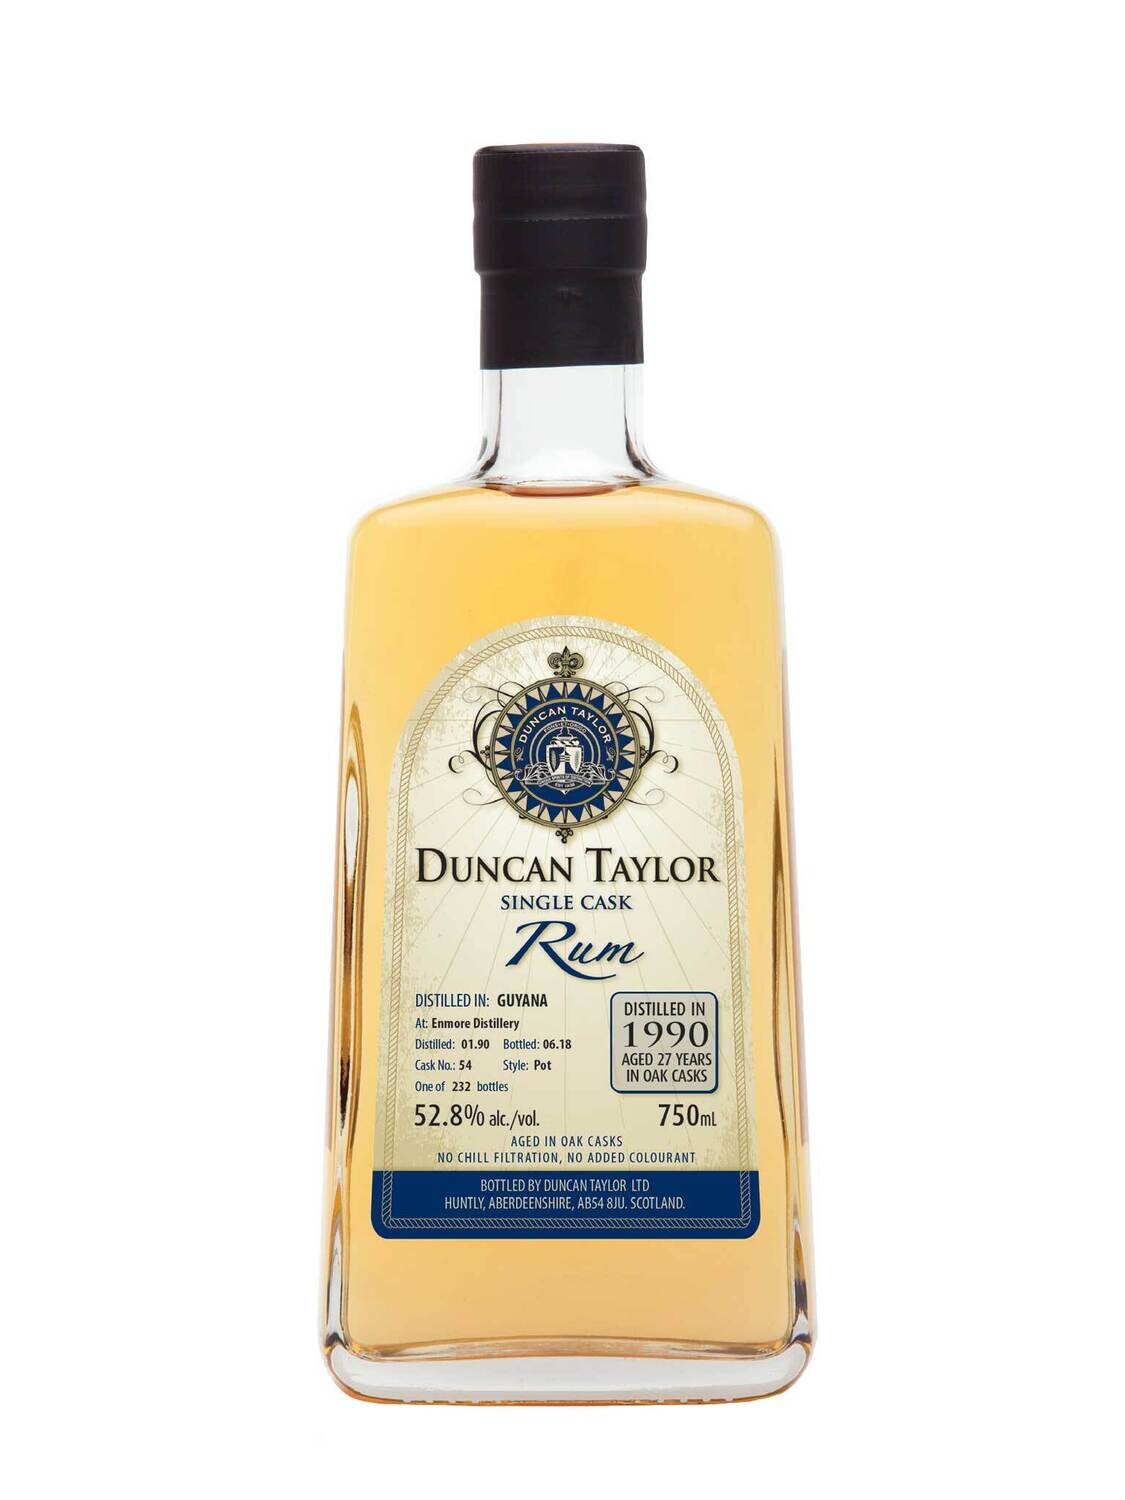 Duncan Taylor Enmore Guyana 1990 27 Year Old Rum Cask 54 52.8% ABV 750mL